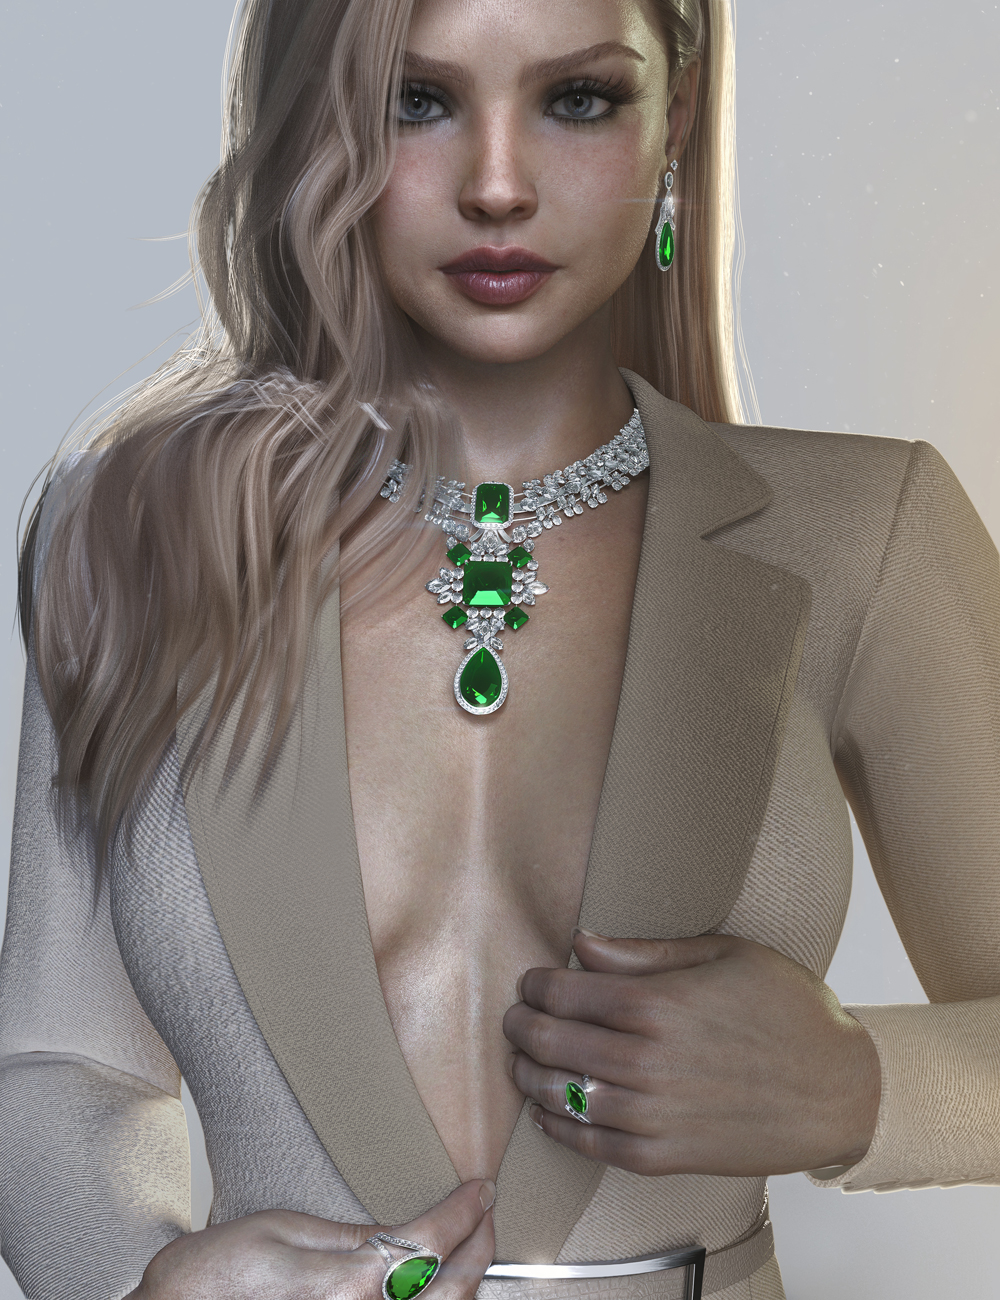 AJC Precious Lady Jewelry for Genesis 9 by: adeilsonjc, 3D Models by Daz 3D